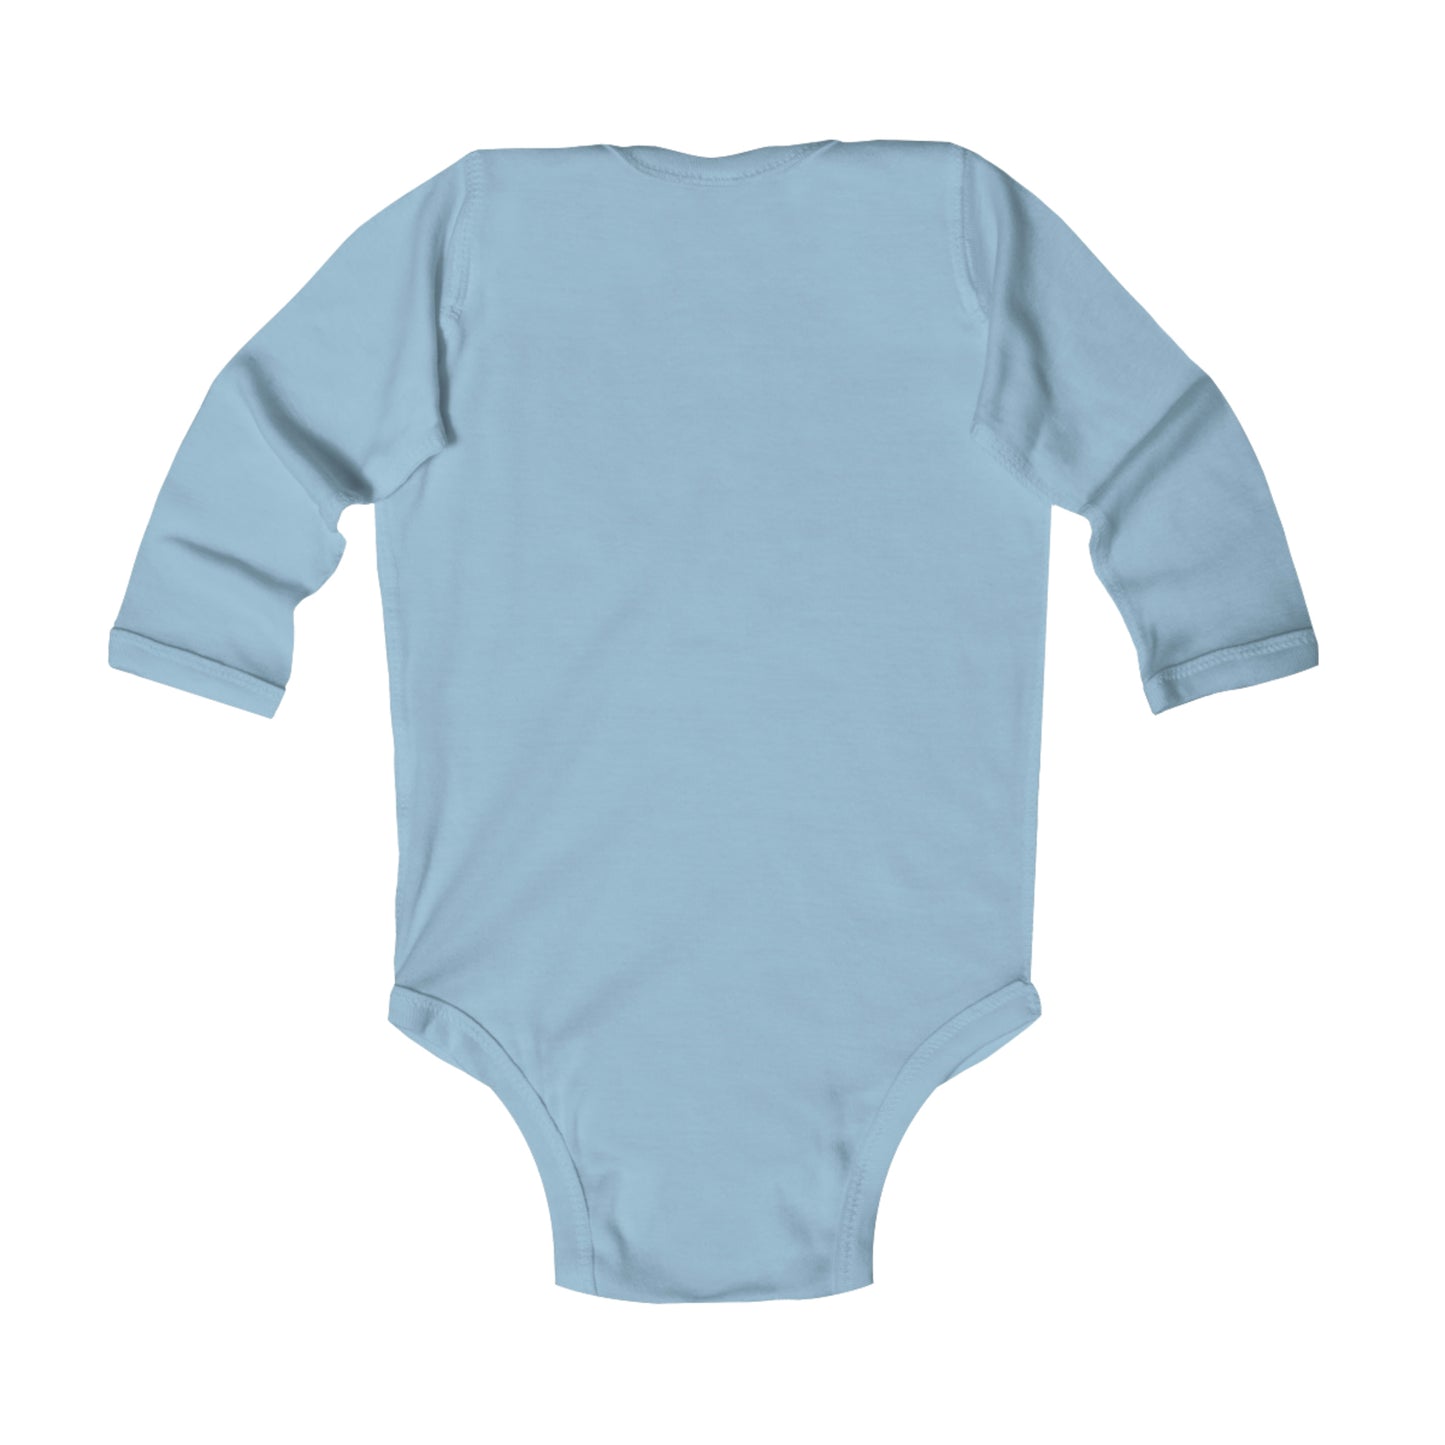 The landing World Infant Long Sleeve Bodysuit